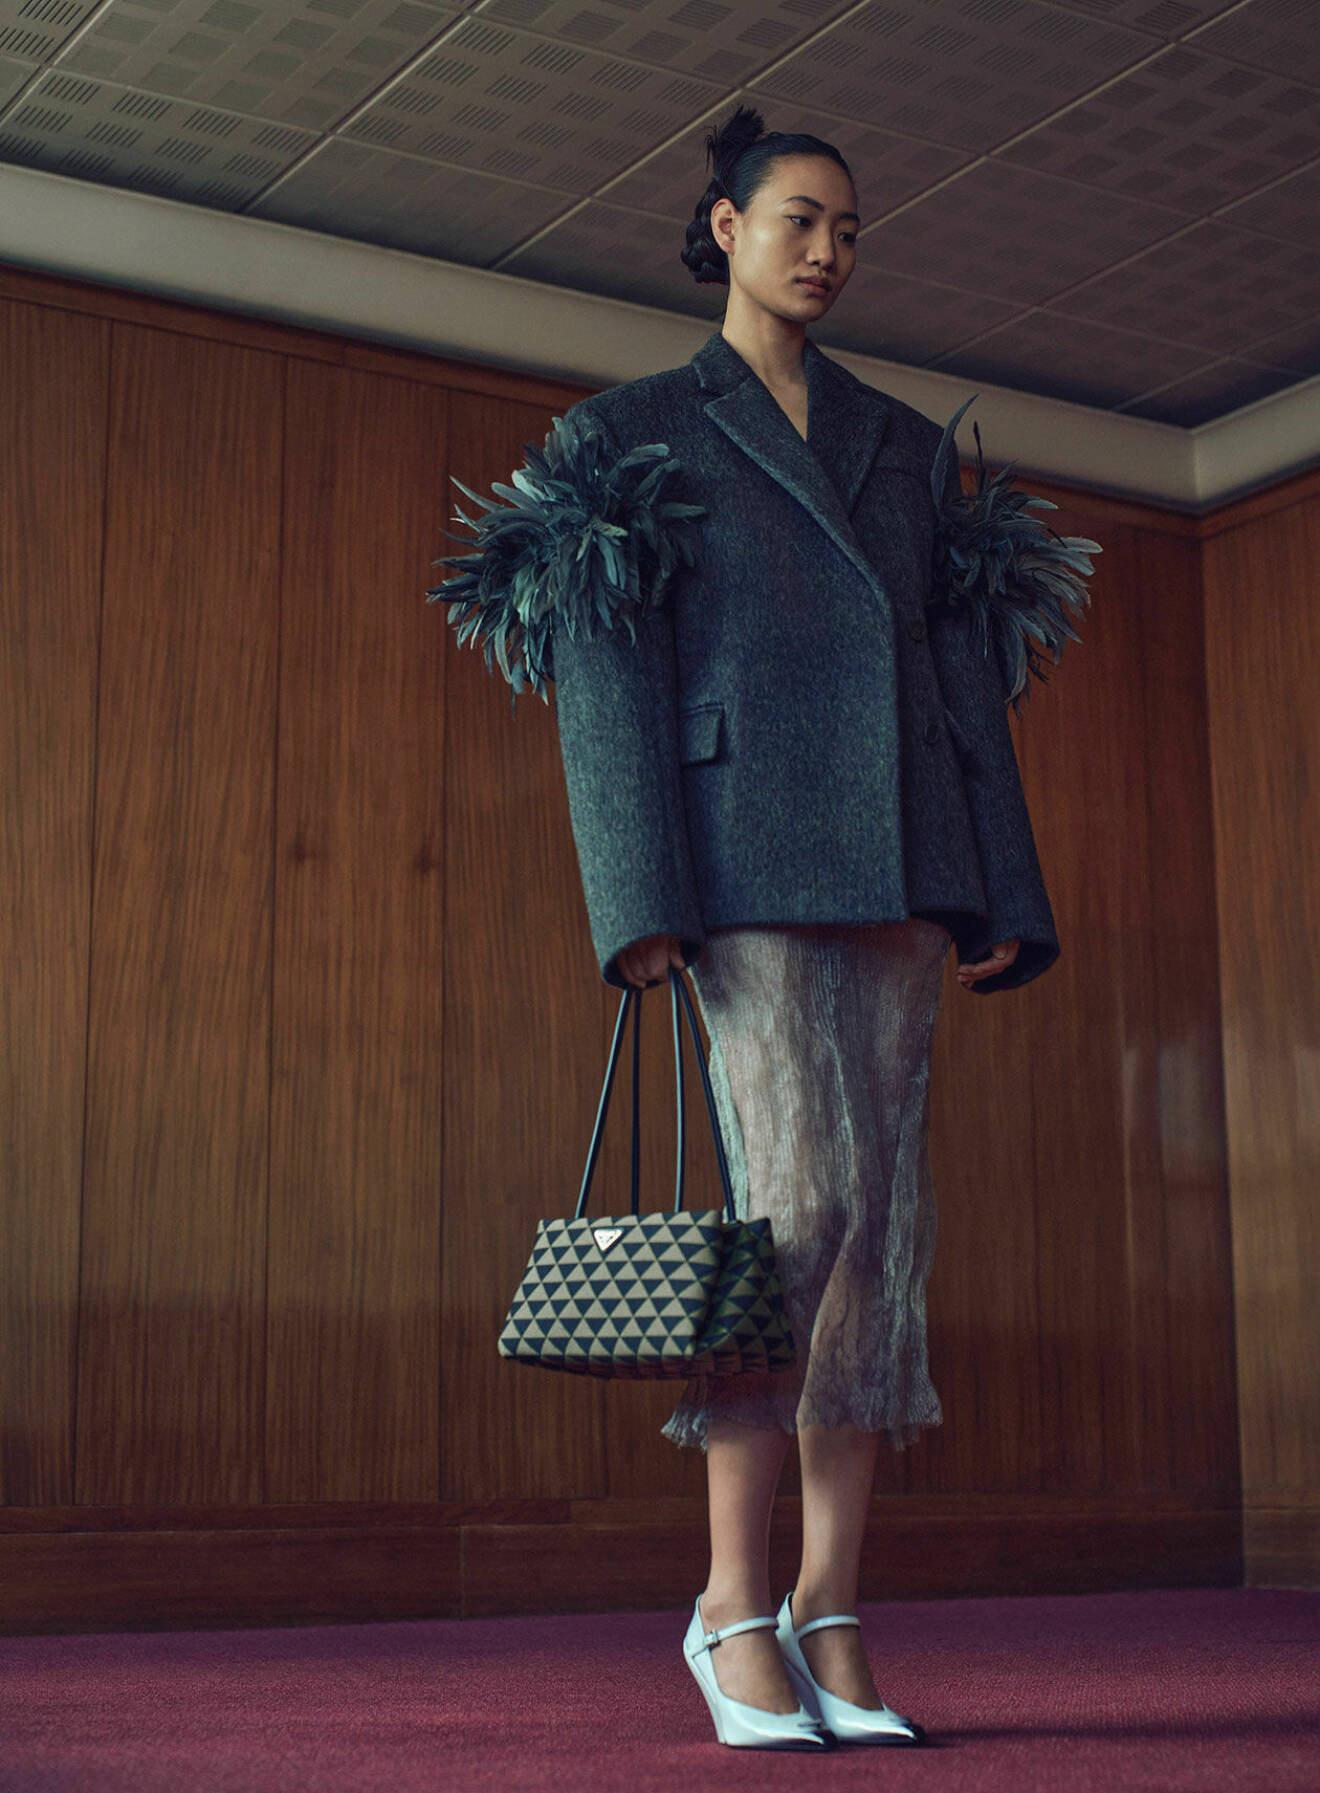 Modellen bär en kavaj, kjol, väska och pumps, allt i en stilkrock från Prada.